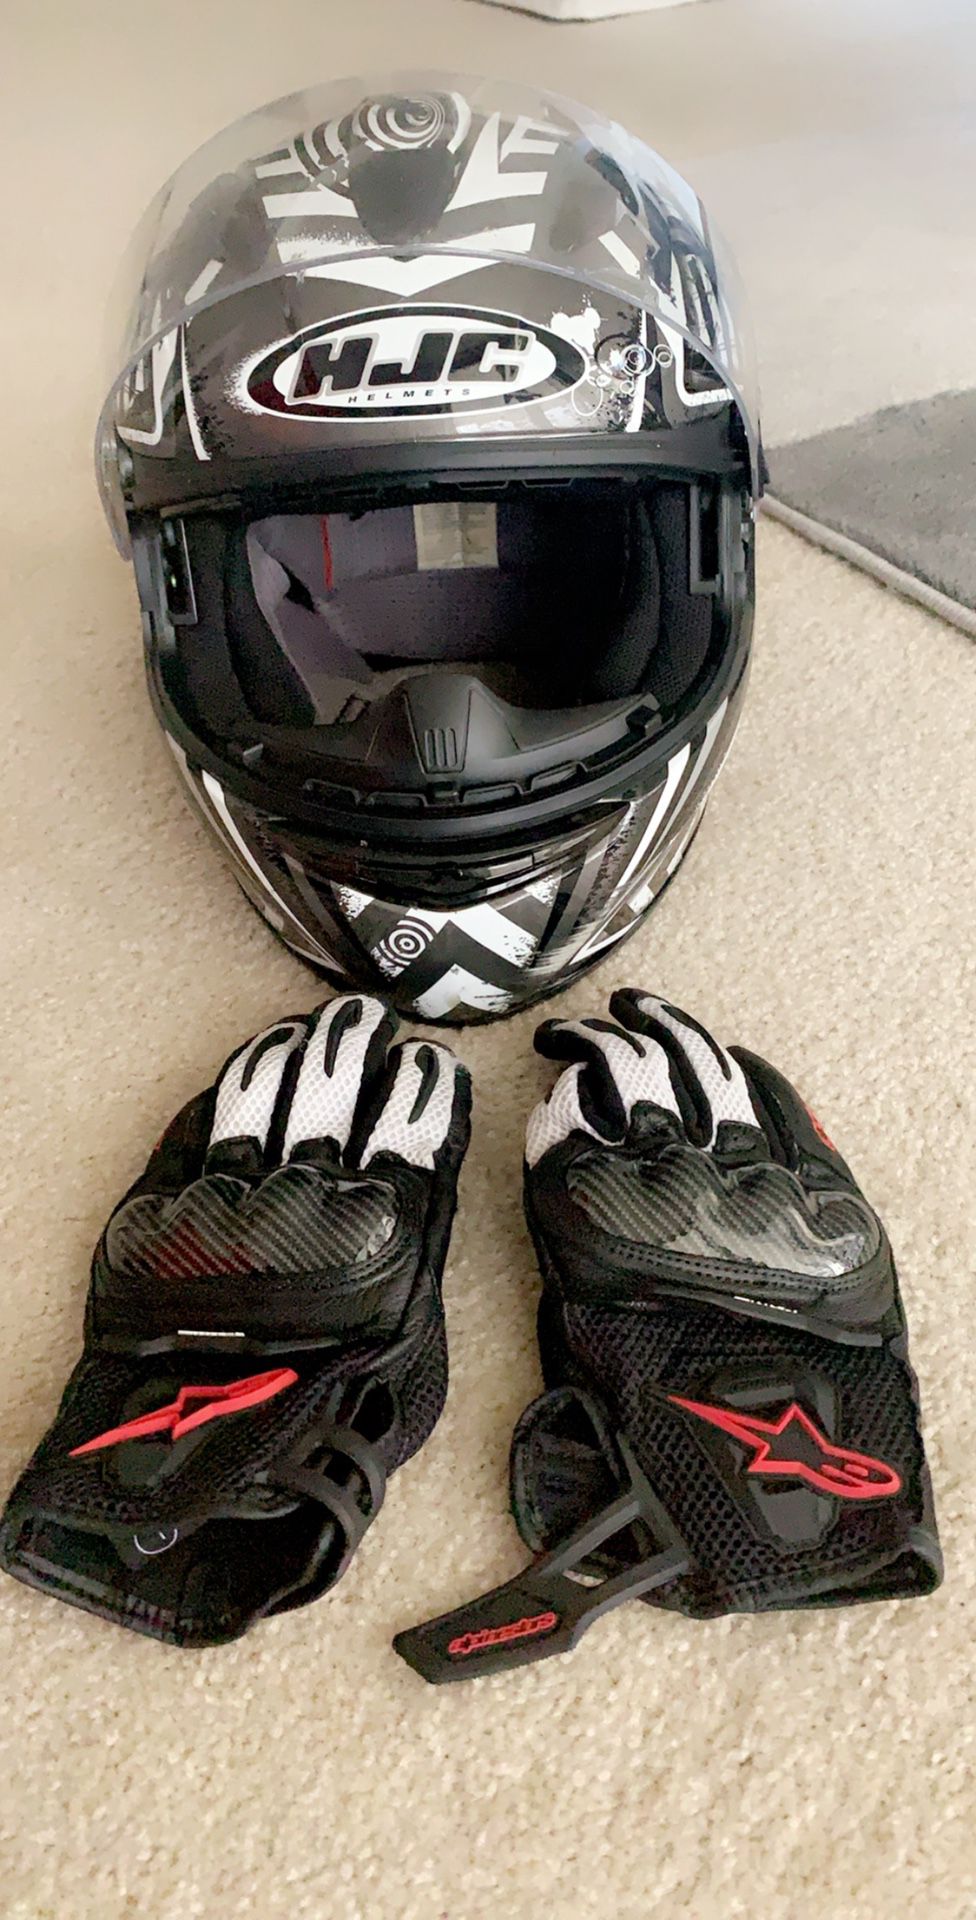 HJC Helmet and gloves